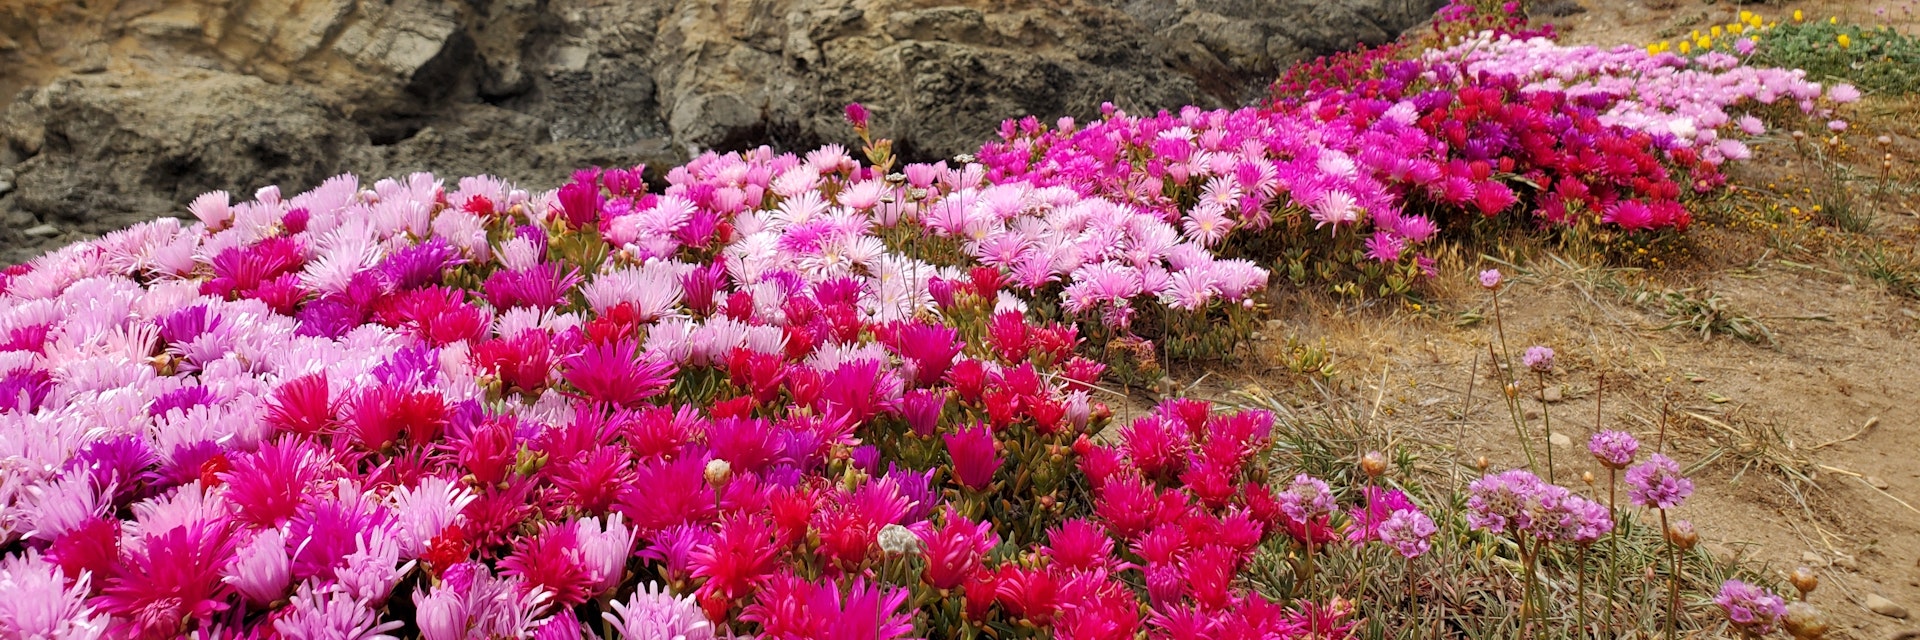 The floral edge of Mendocino Botanical Garden.